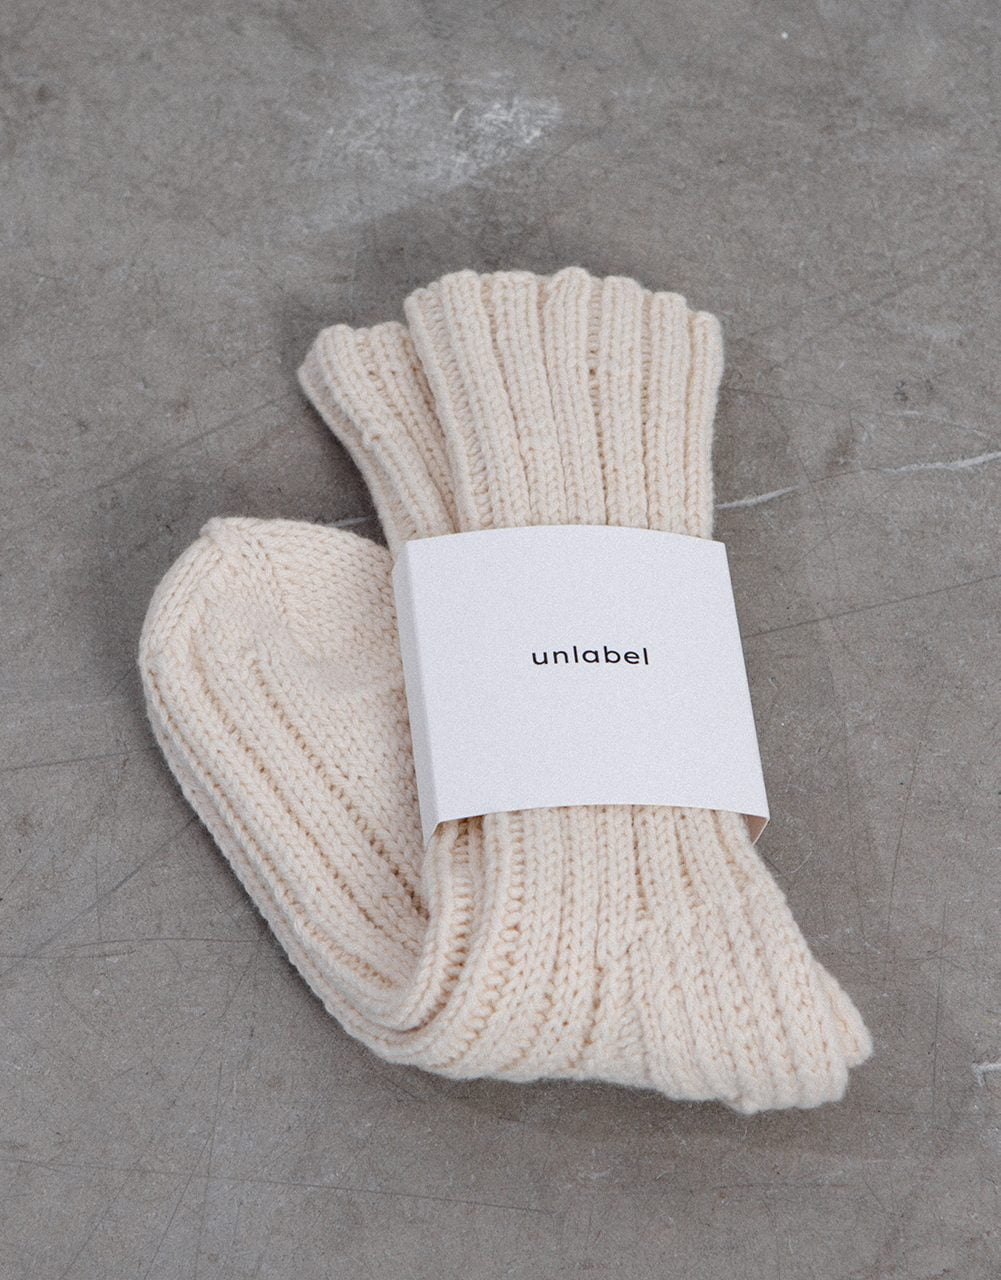 hand knitted socks